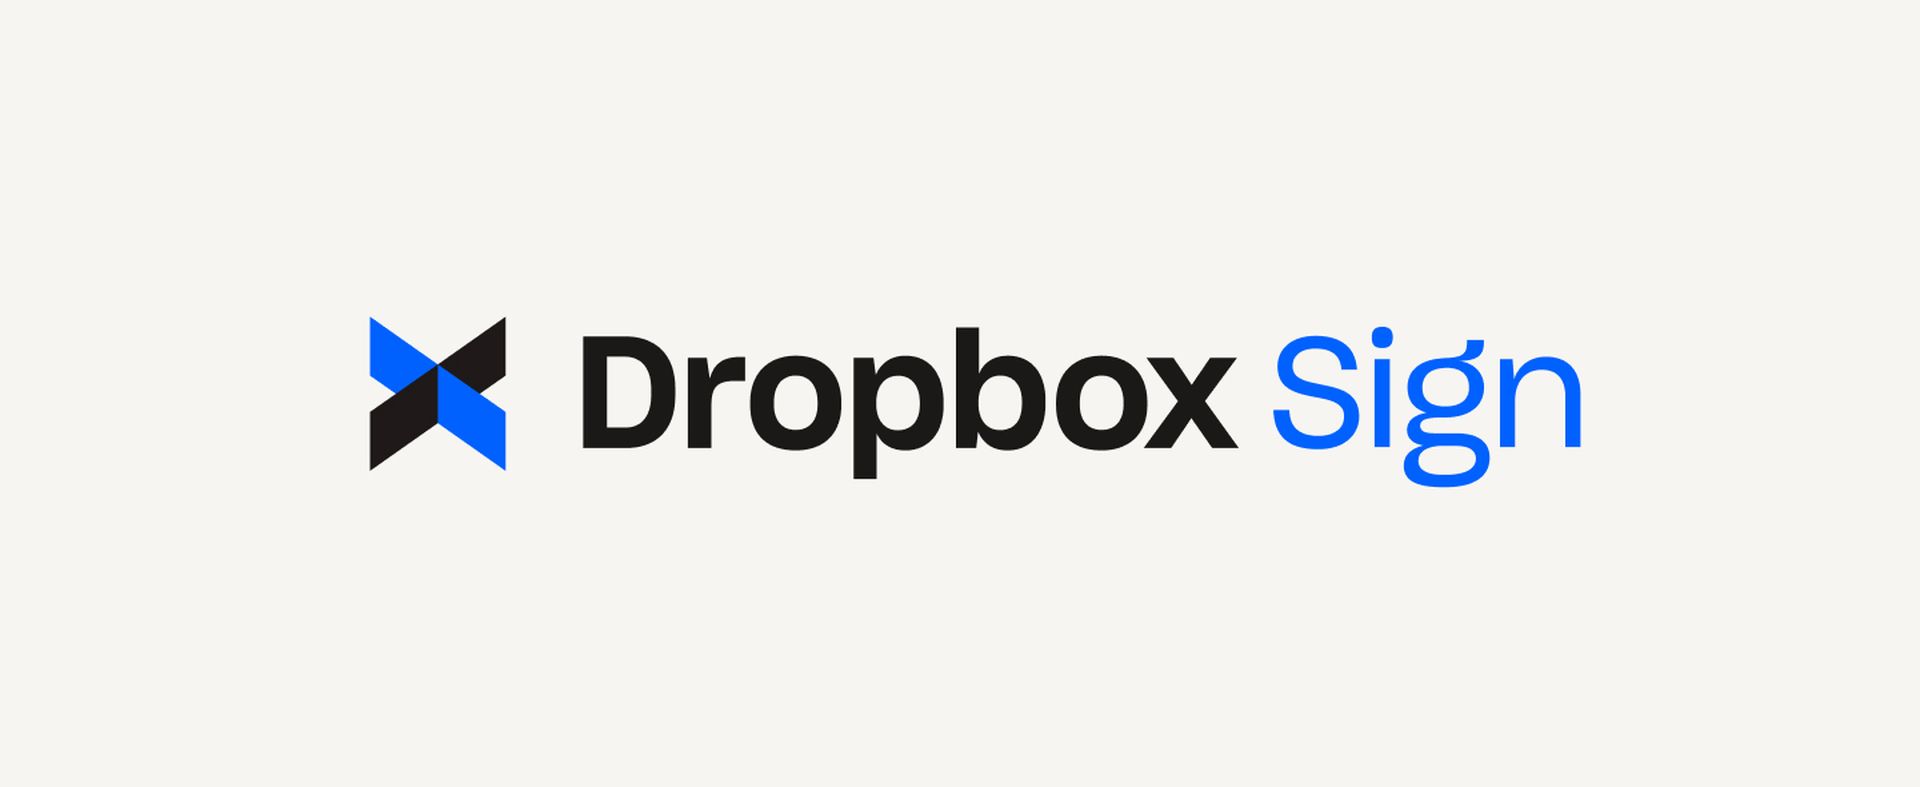 O ataque Dropbox Sign: um mergulho profundo na segurança e nas implicações dos dados